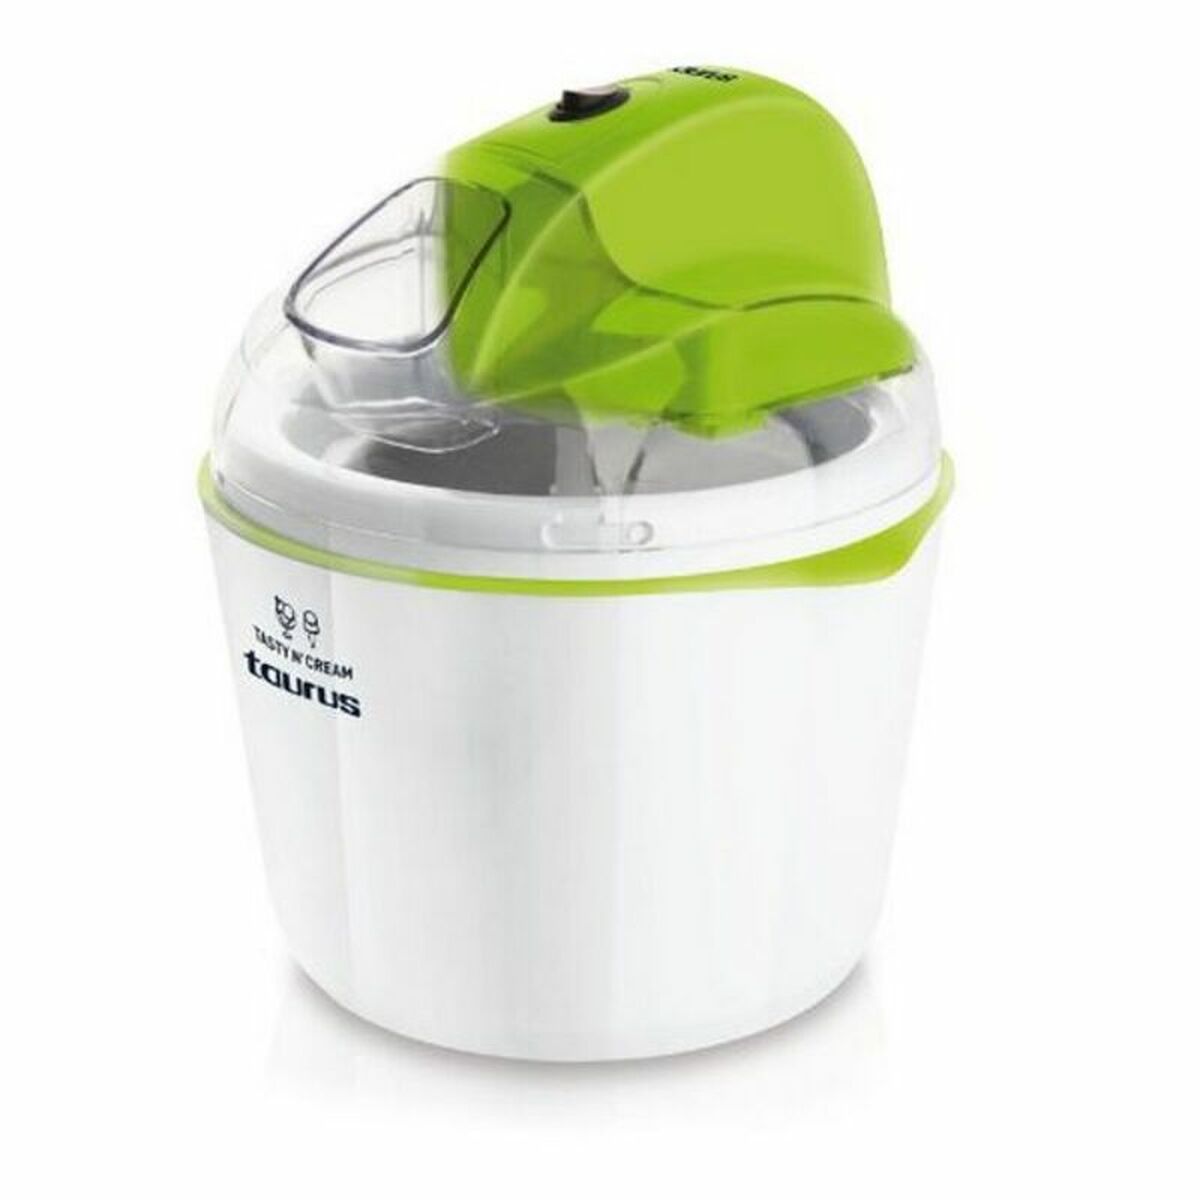 Eismaschine Taurus Tasty'n'cream Weiß grün 12 W 1,5 L Kunststoff - CA International 